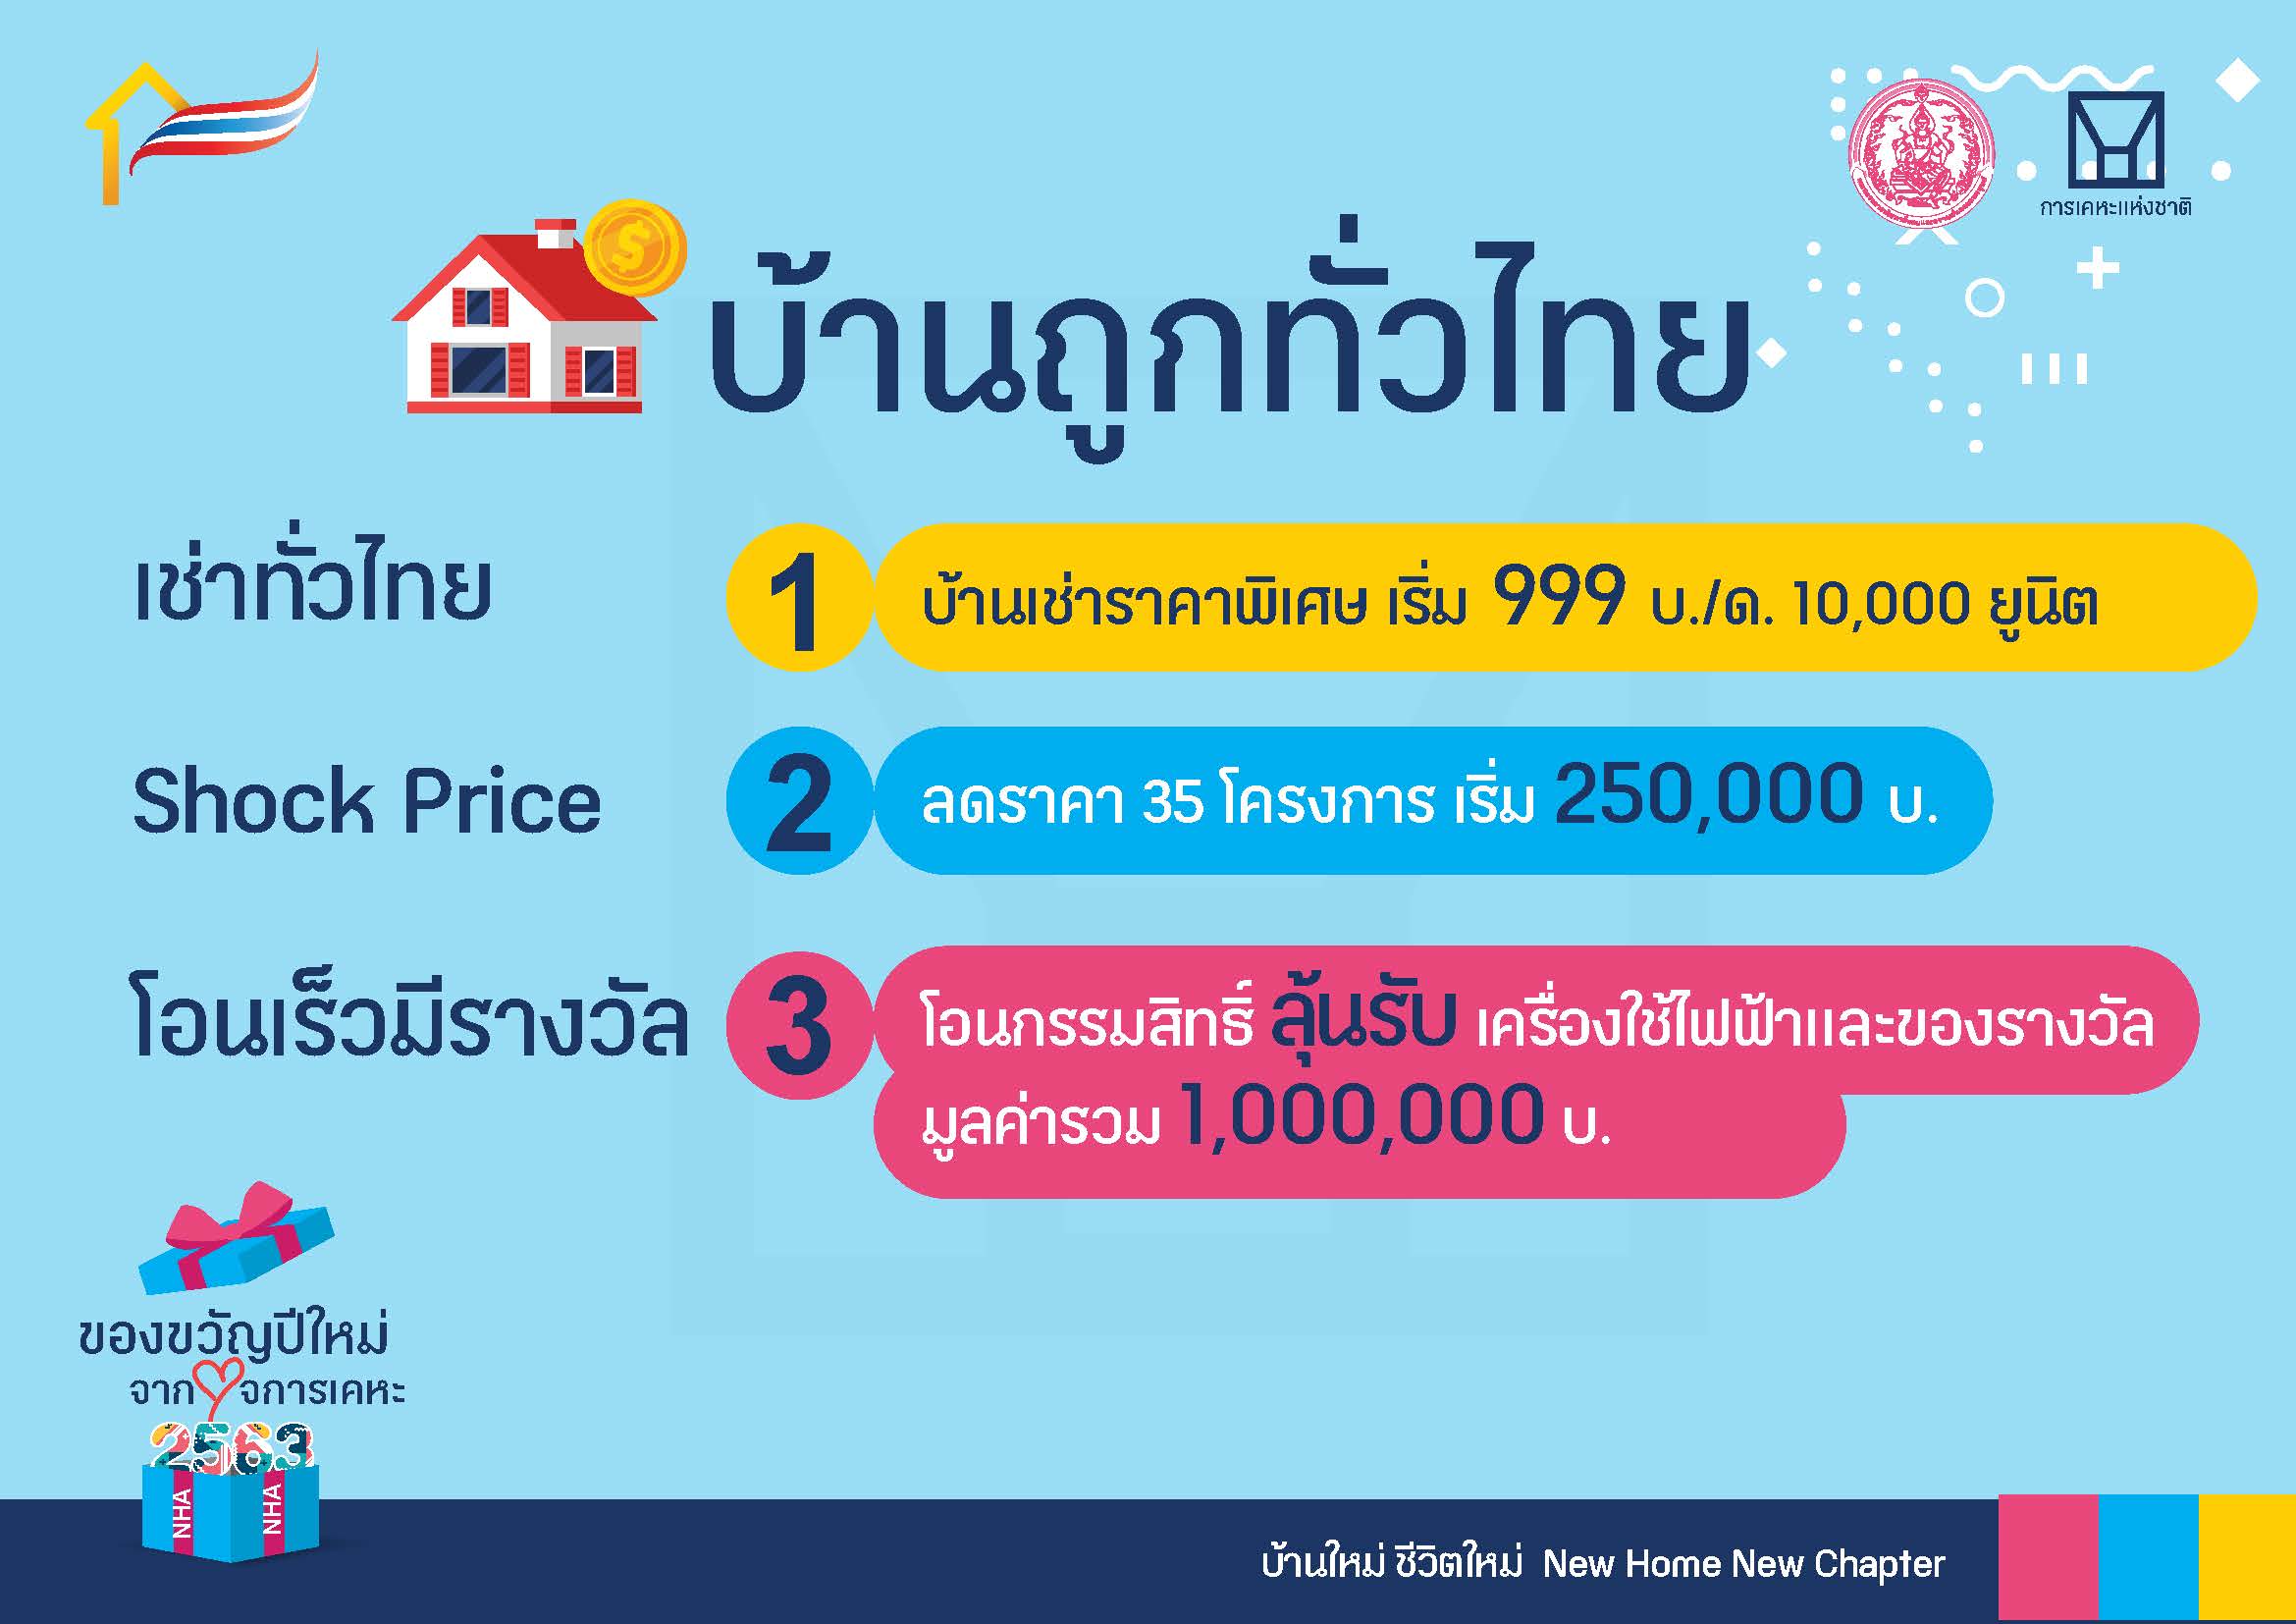 การเคหะฯ เปิดโครงการ 'เช่าทั่วไทย' 999 บาท/เดือน